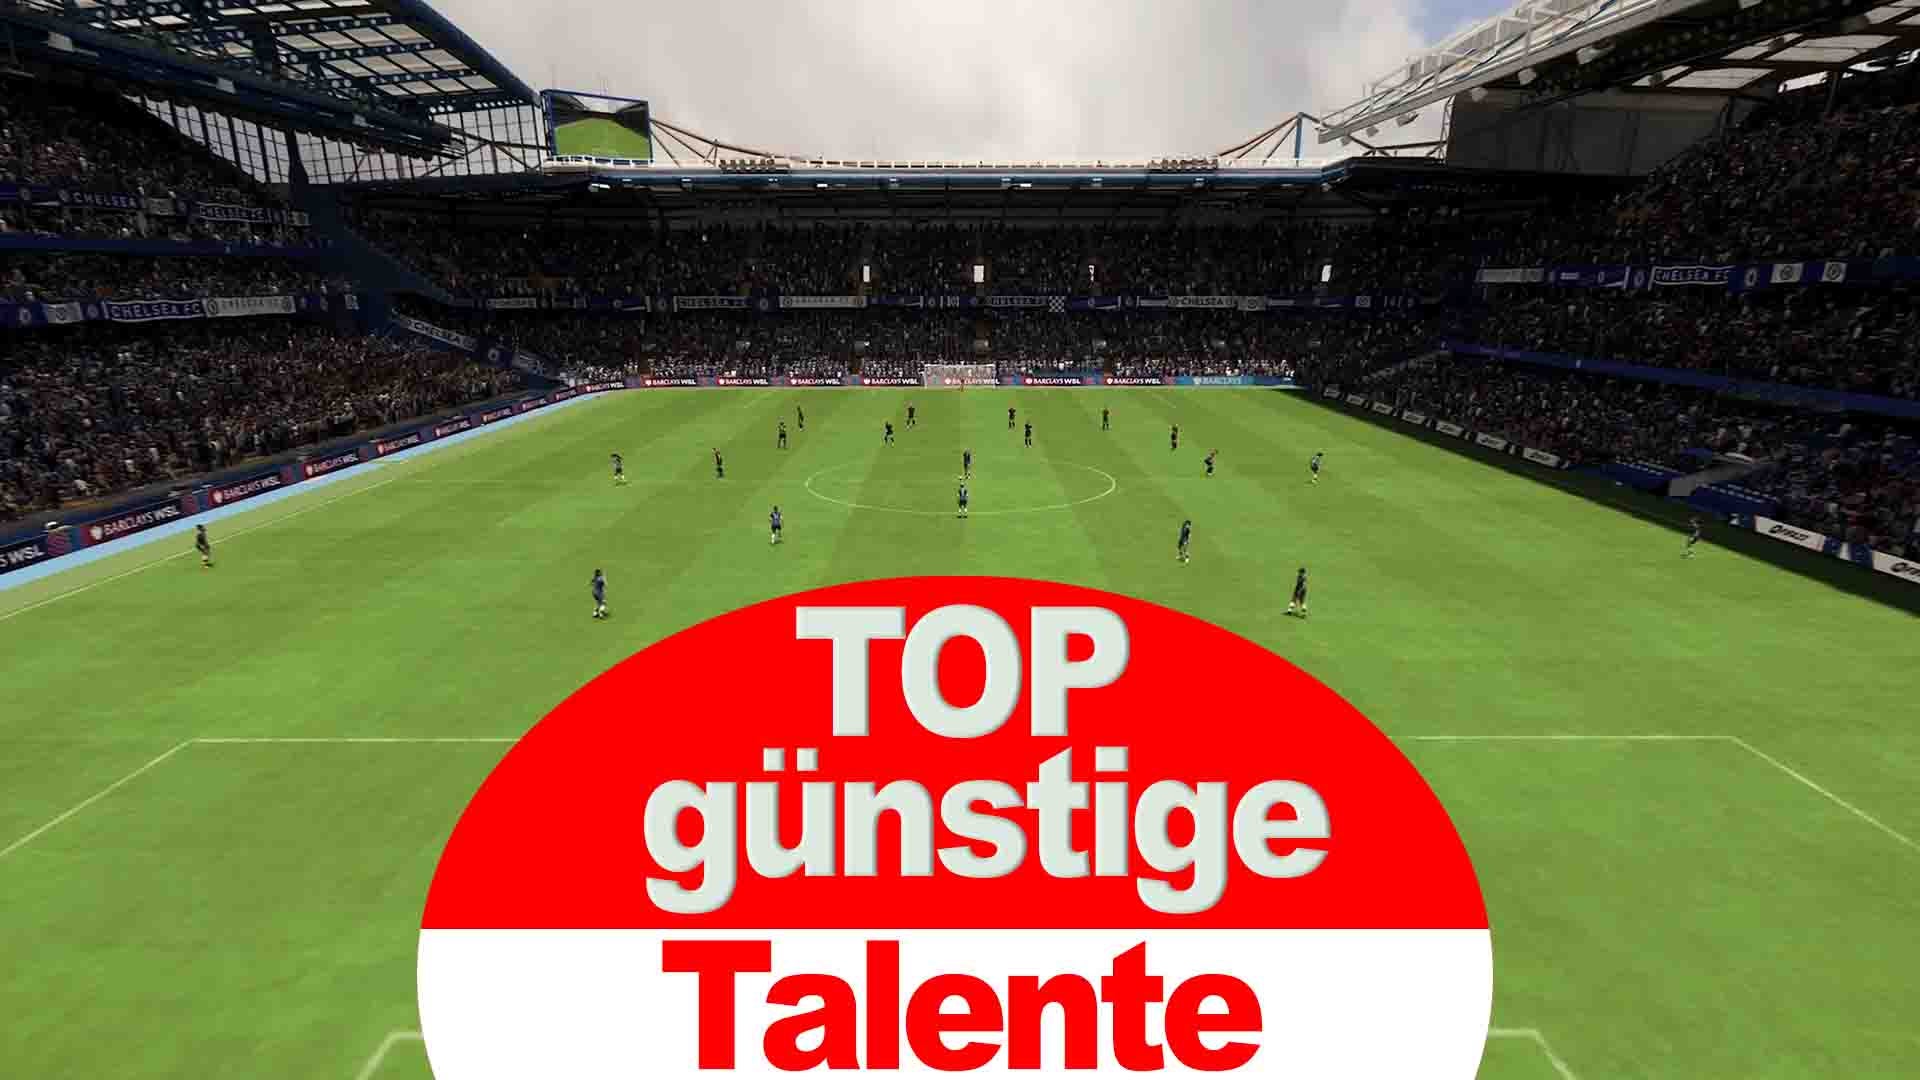 Bilder zu FIFA 23: Top 6 günstige Talente unter 1 Mio. für jede Position